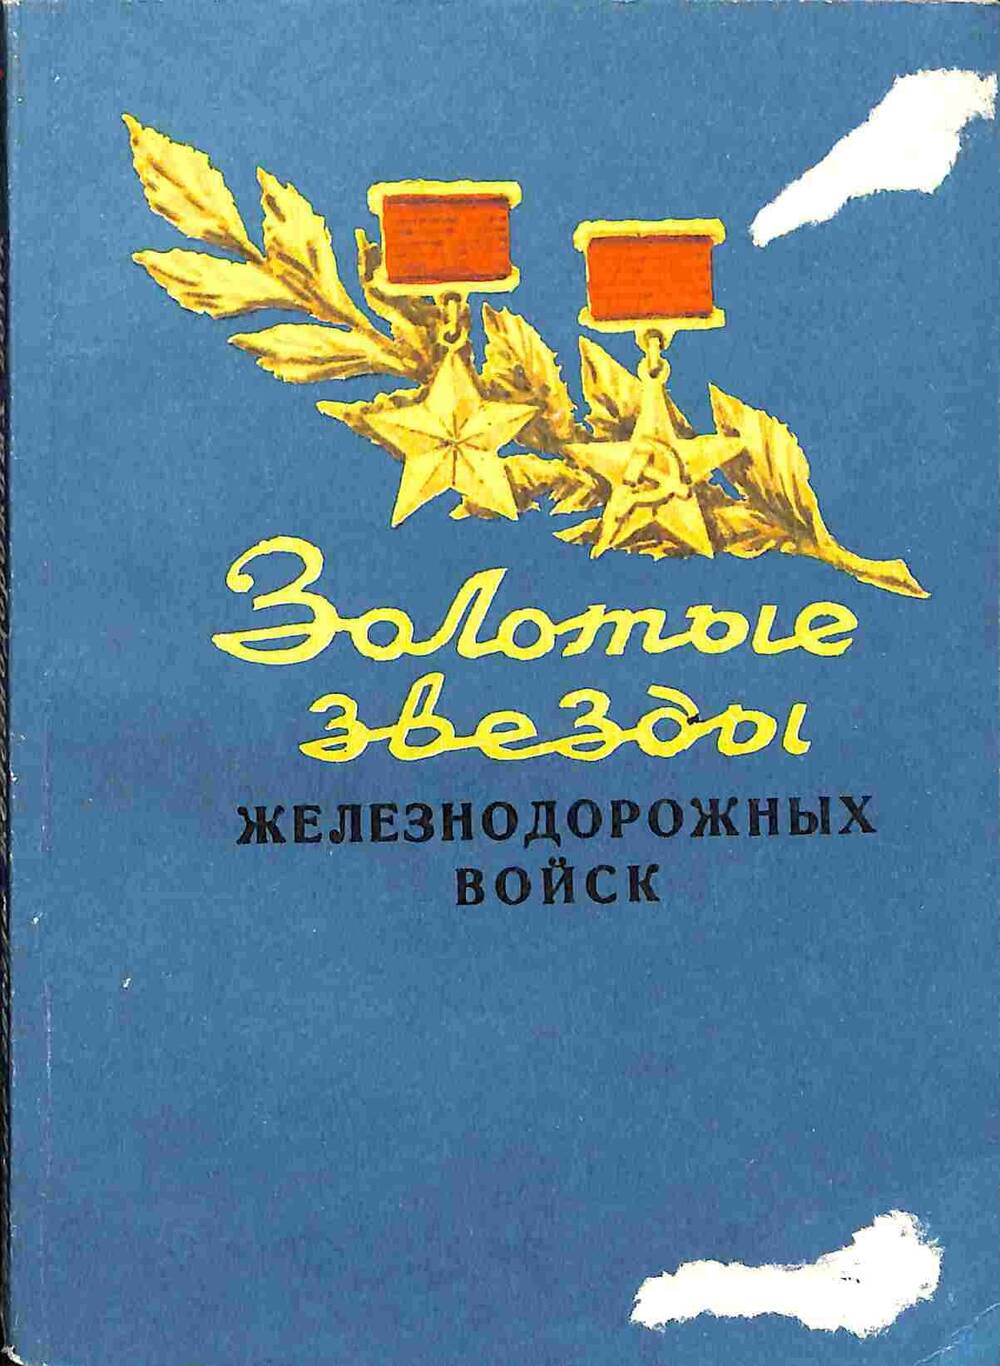 Книга. Золотые звезды железнодорожных войск. - Ленуприздат, 1985. - 194 с.